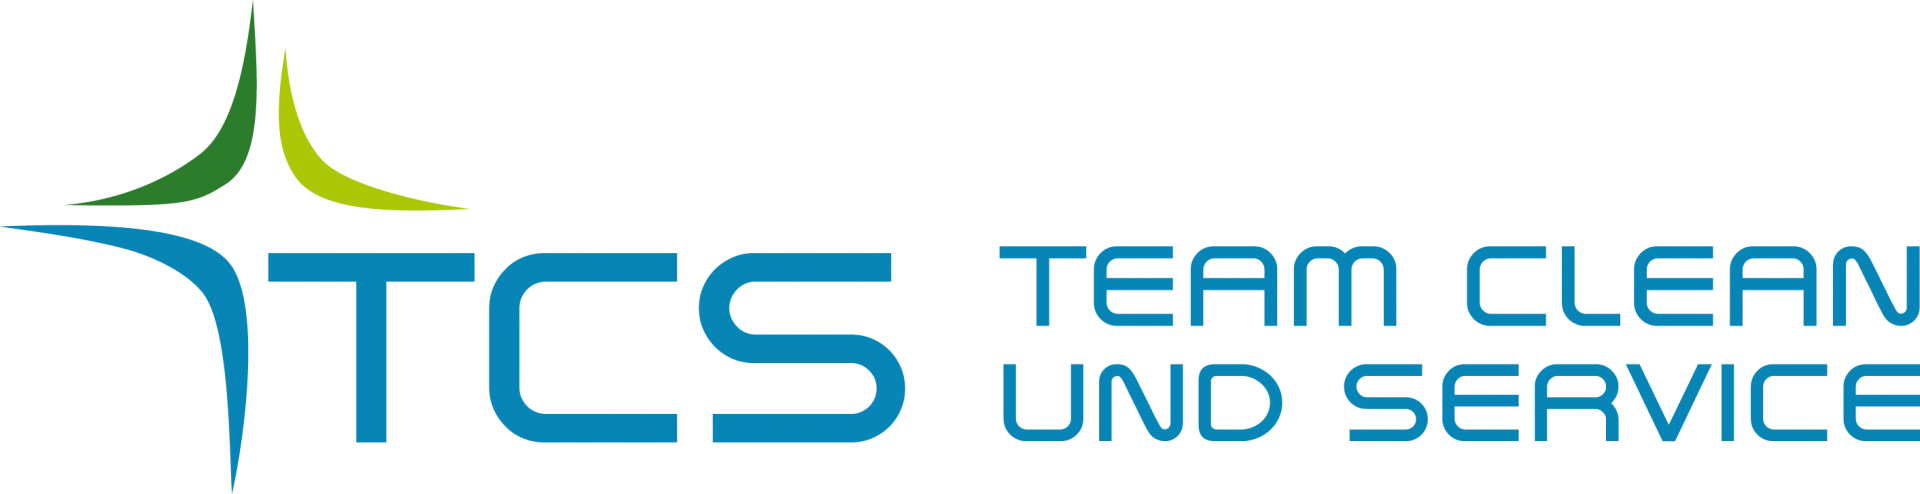 TCS Team Clean und Service final logo